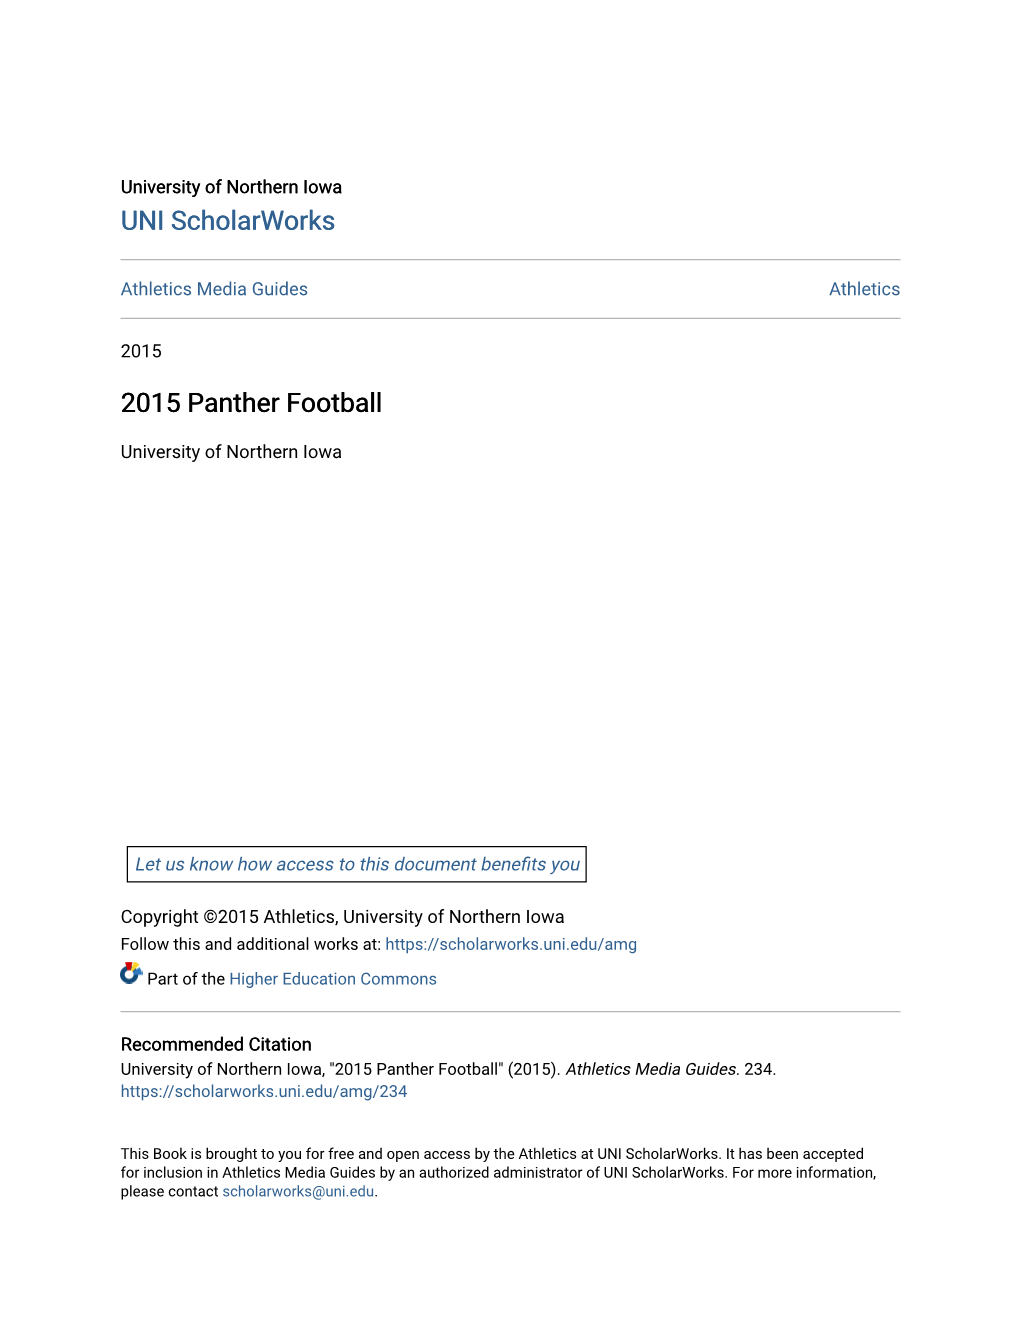 2015 Panther Football